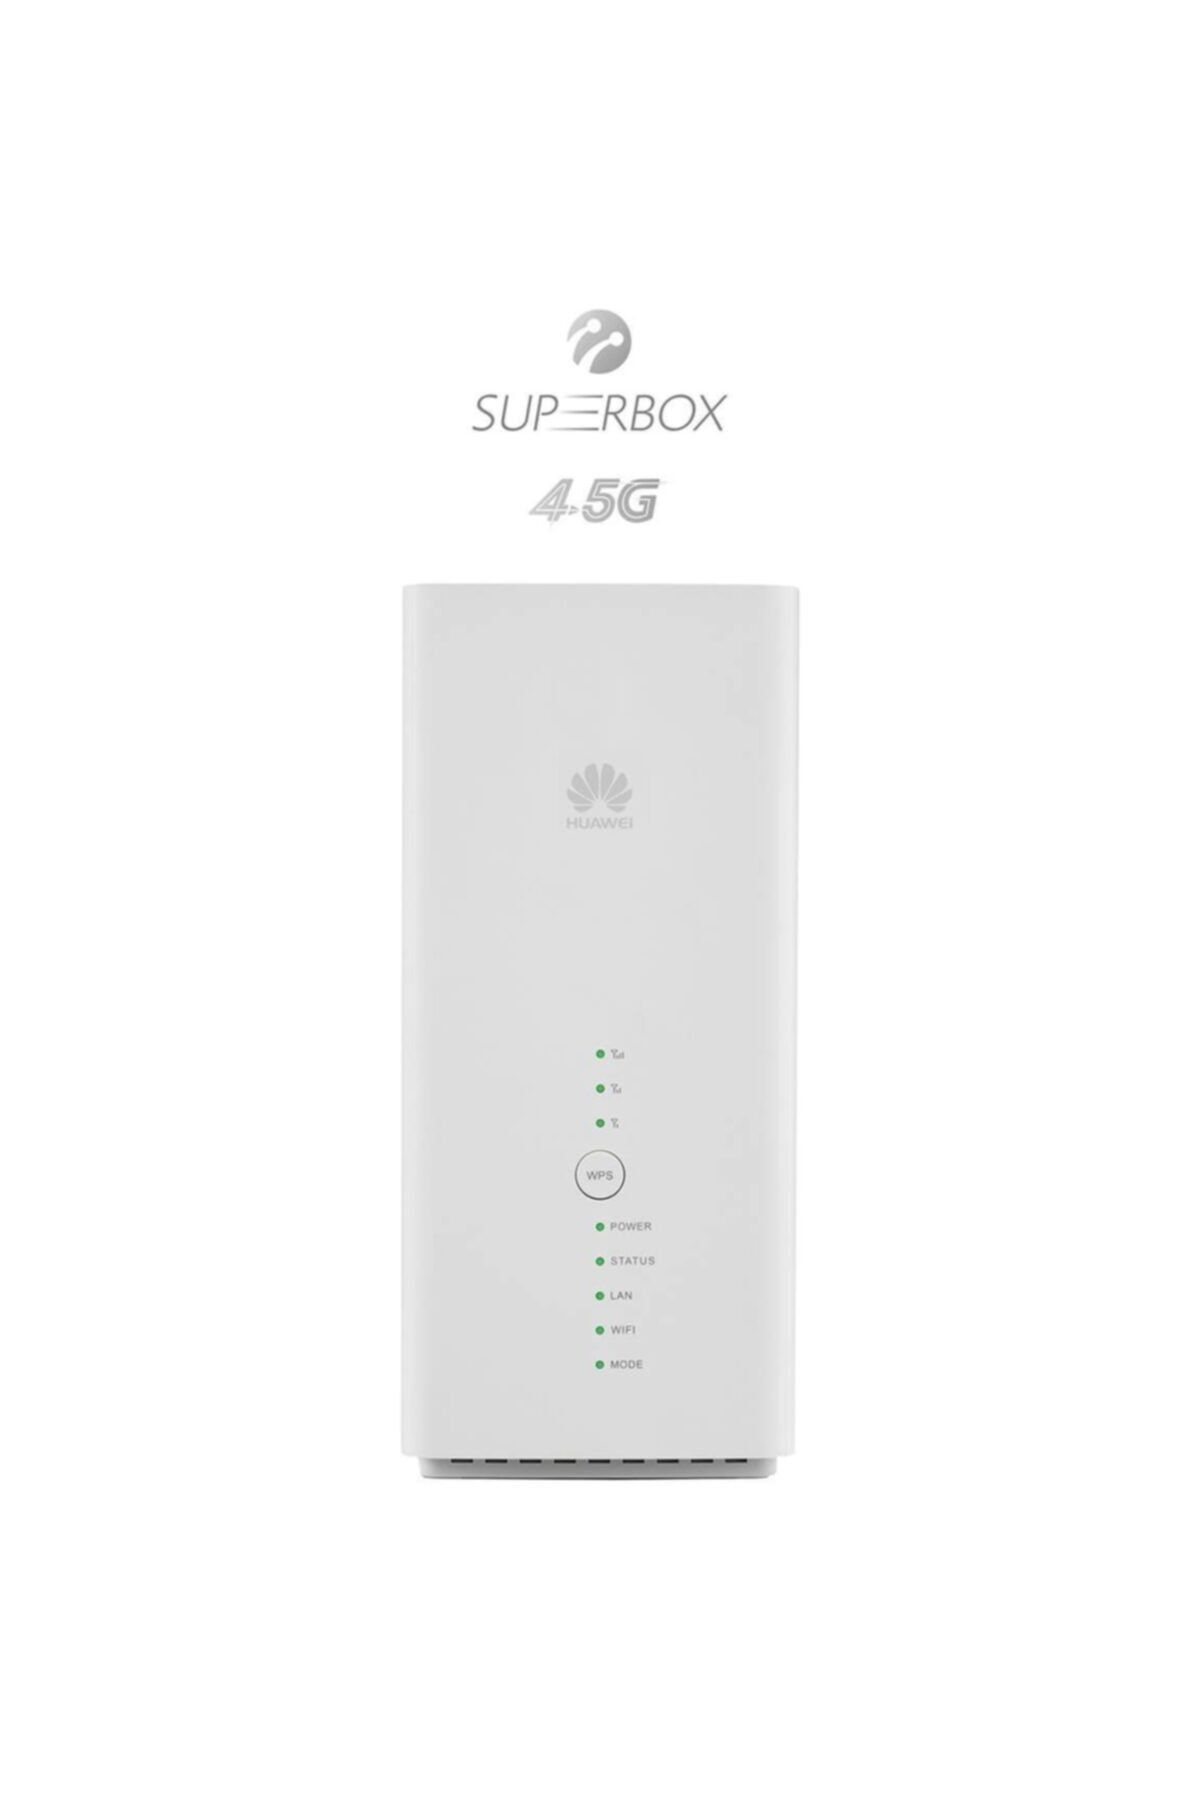 Huawei Superbox 4.5 G Türkcell